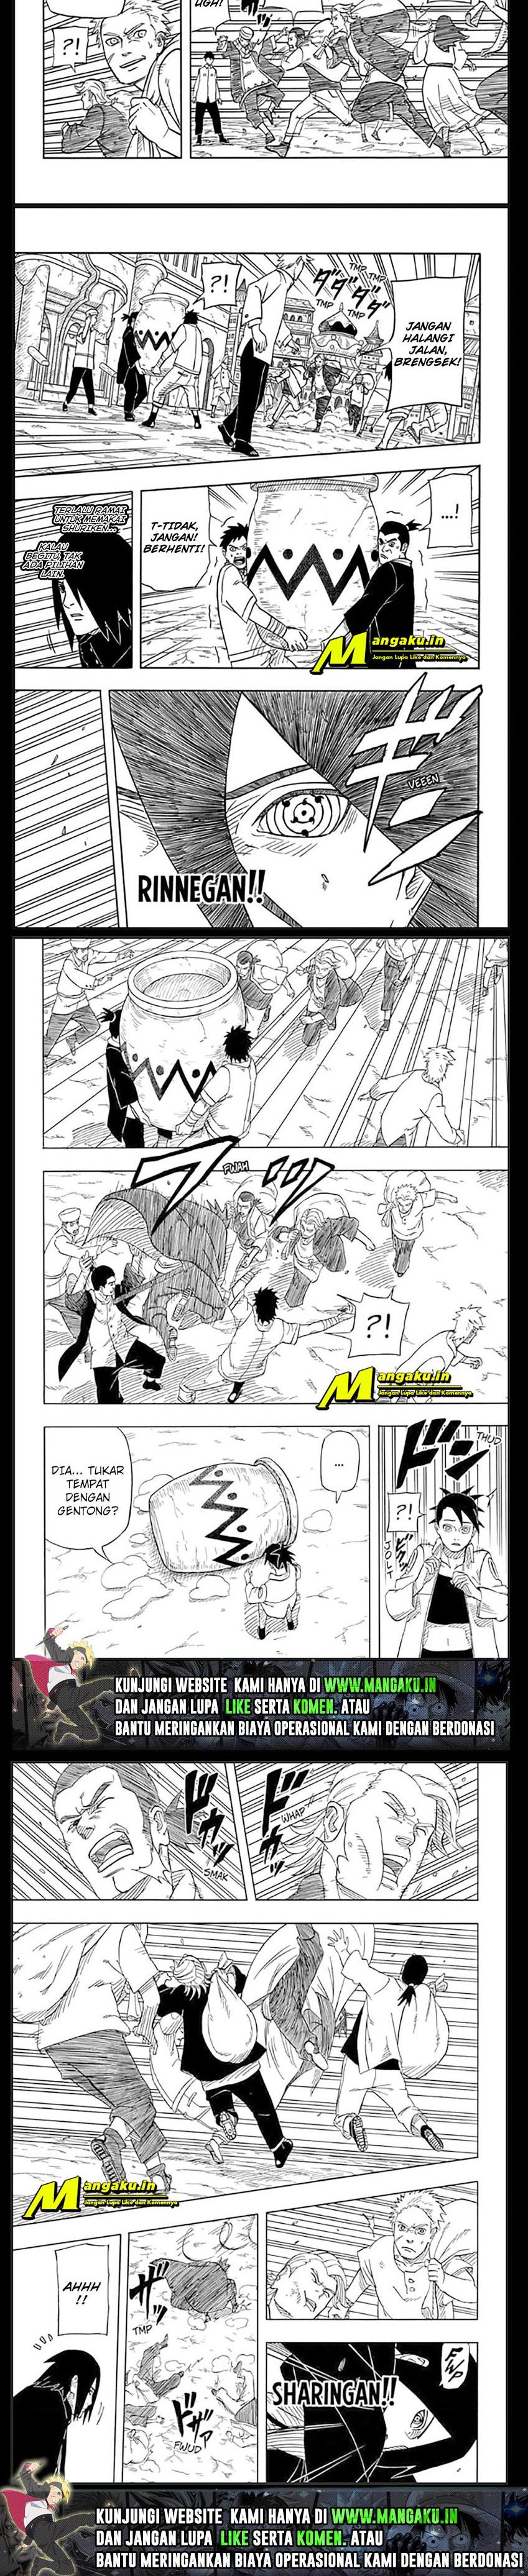 Naruto Sasuke’s Story The Uchiha And The Heavenly Stardust Chapter 1.1